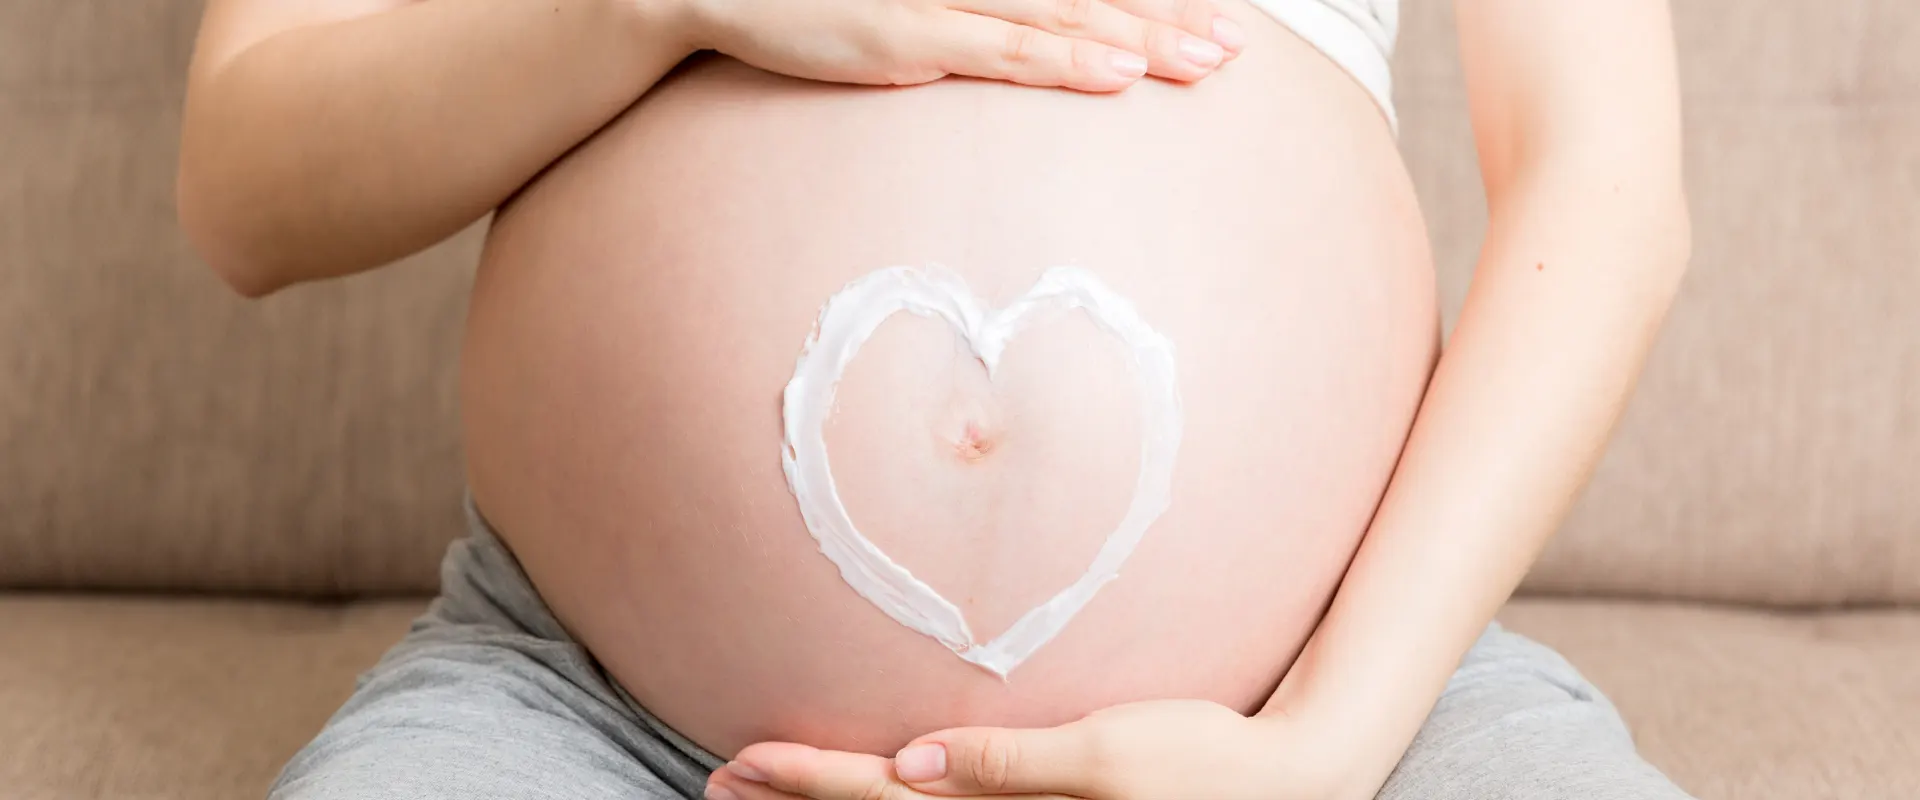 Smagliature in gravidanza: come prevenirle ed eliminarle